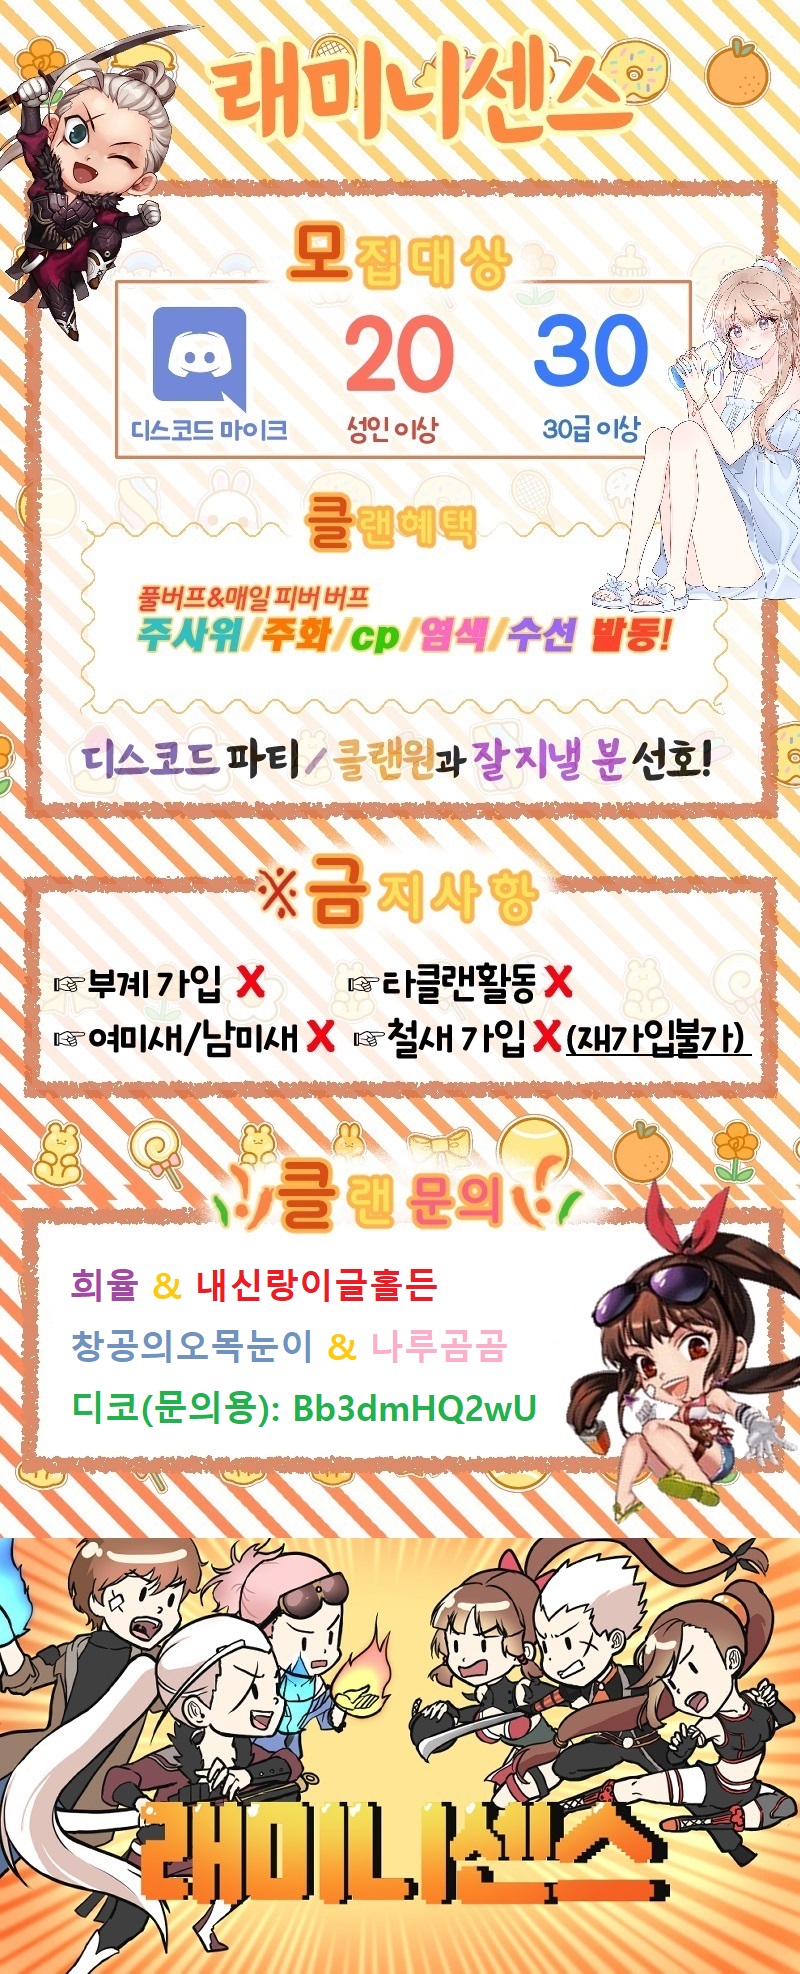 뉴 홍♡♡2(수정용)5차 (아래만+임나은2)창공.jpg